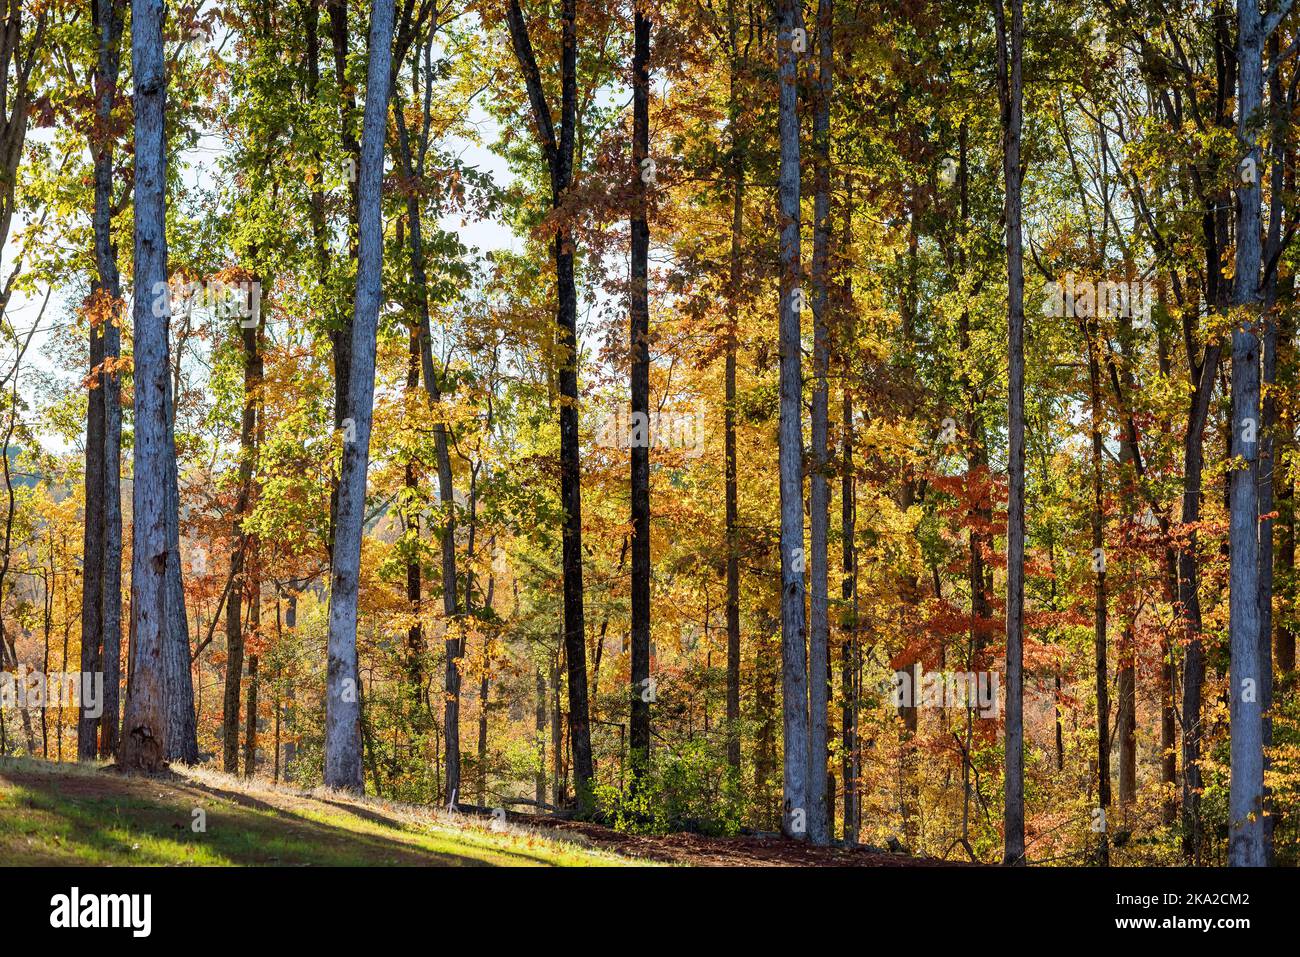 La Caroline du Sud offre une vue magnifique sur la nature avec un paysage chaud de forêt jaune d'automne Banque D'Images